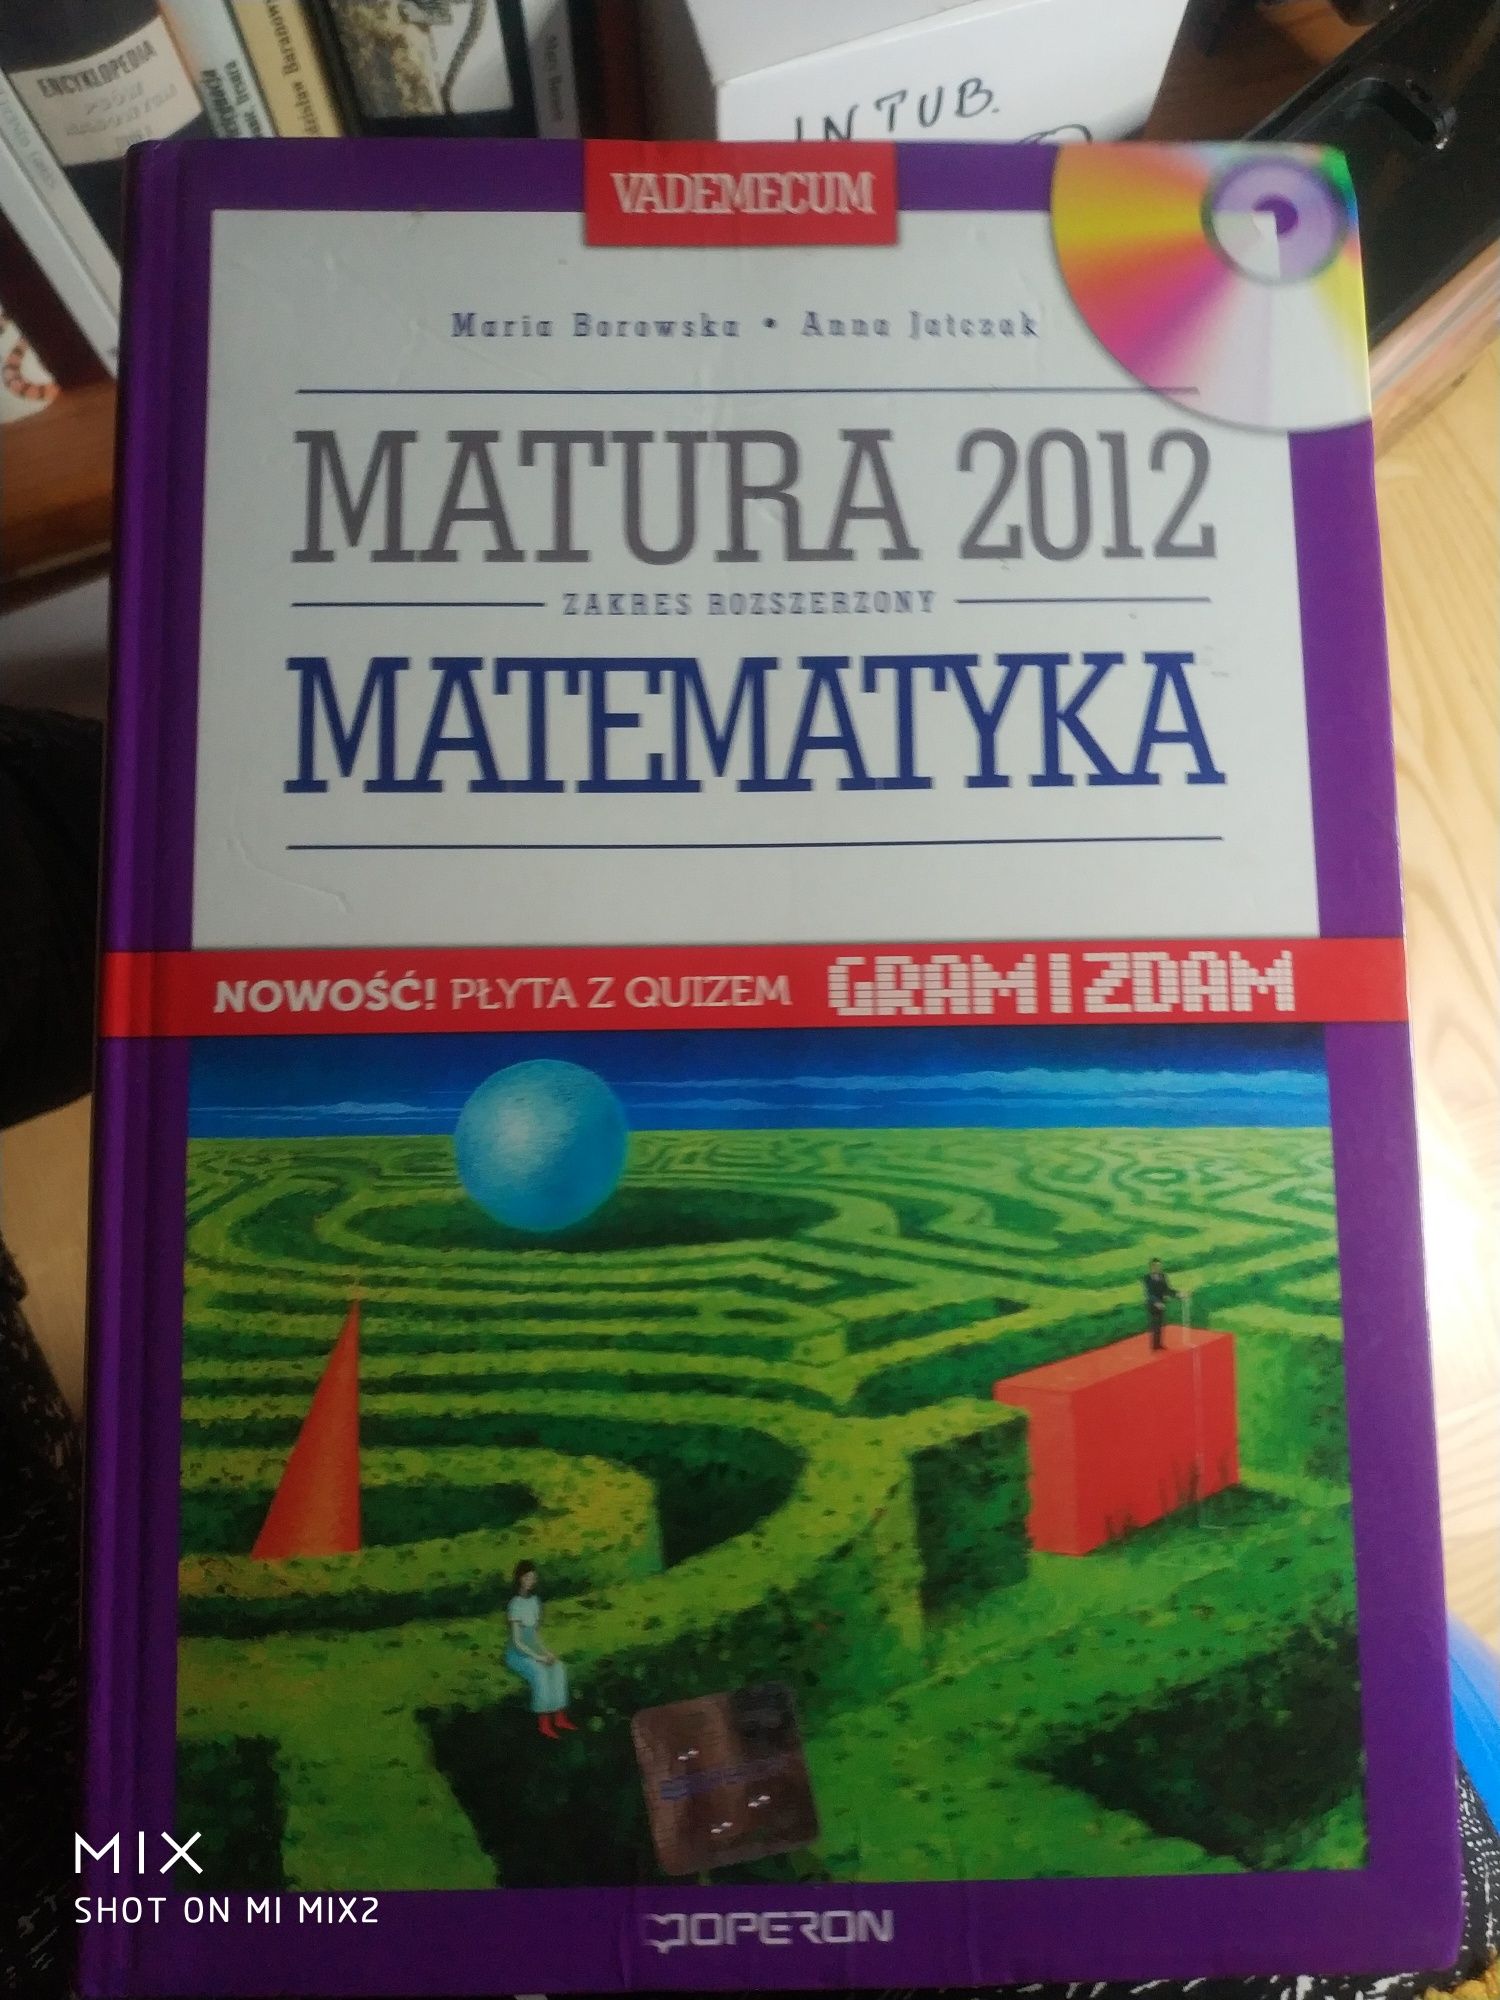 Matura 2002 Matematyka